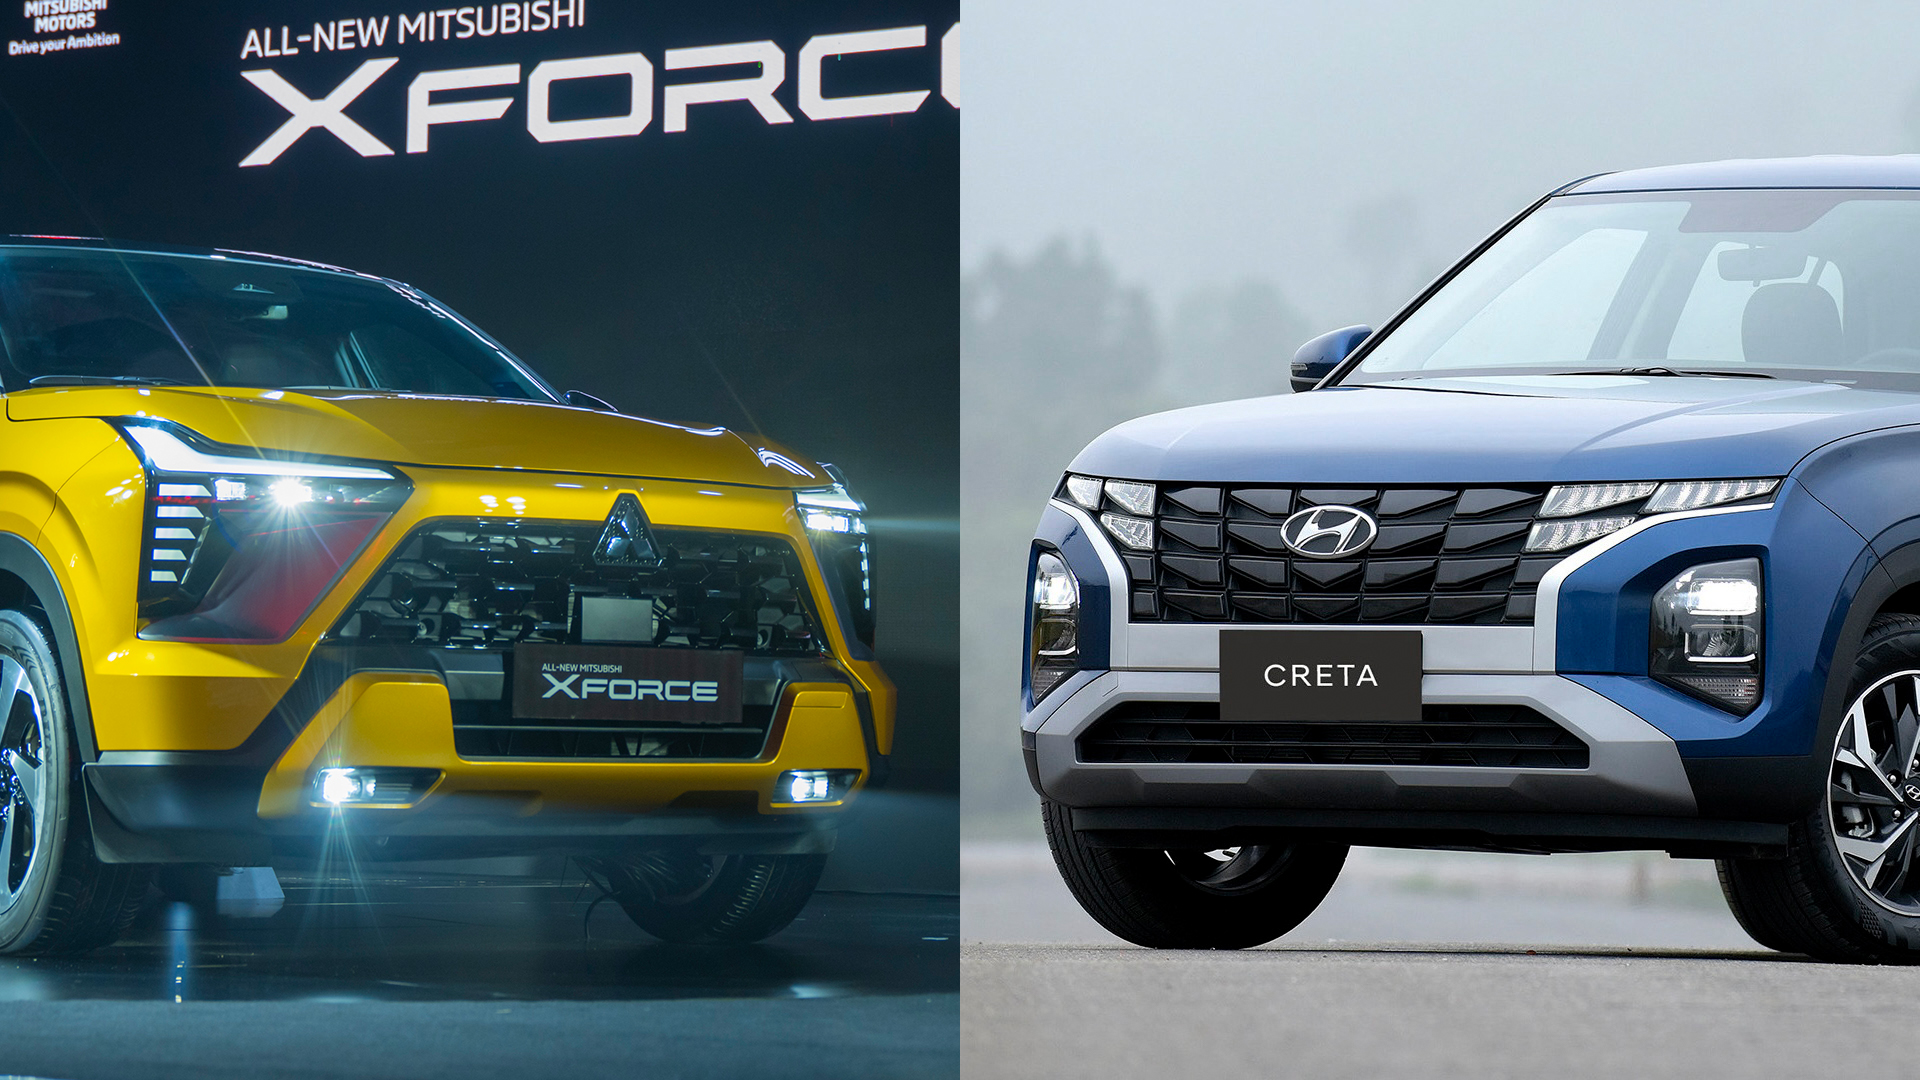 Chọn Mitsubishi Xforce hay Hyundai Creta?